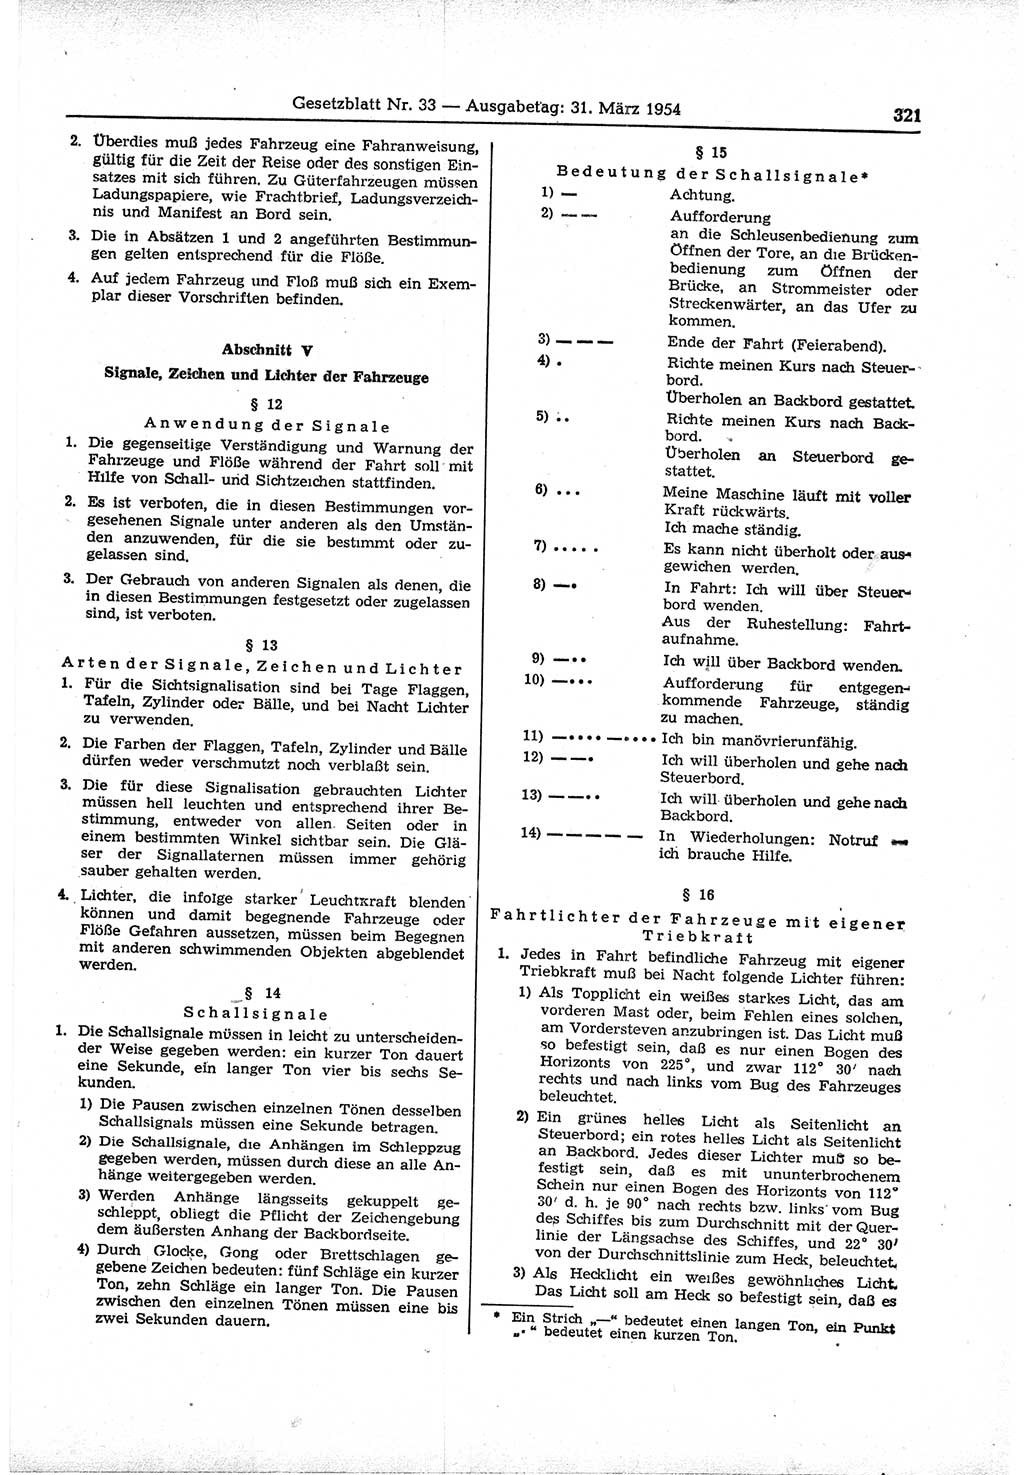 Gesetzblatt (GBl.) der Deutschen Demokratischen Republik (DDR) 1954, Seite 321 (GBl. DDR 1954, S. 321)